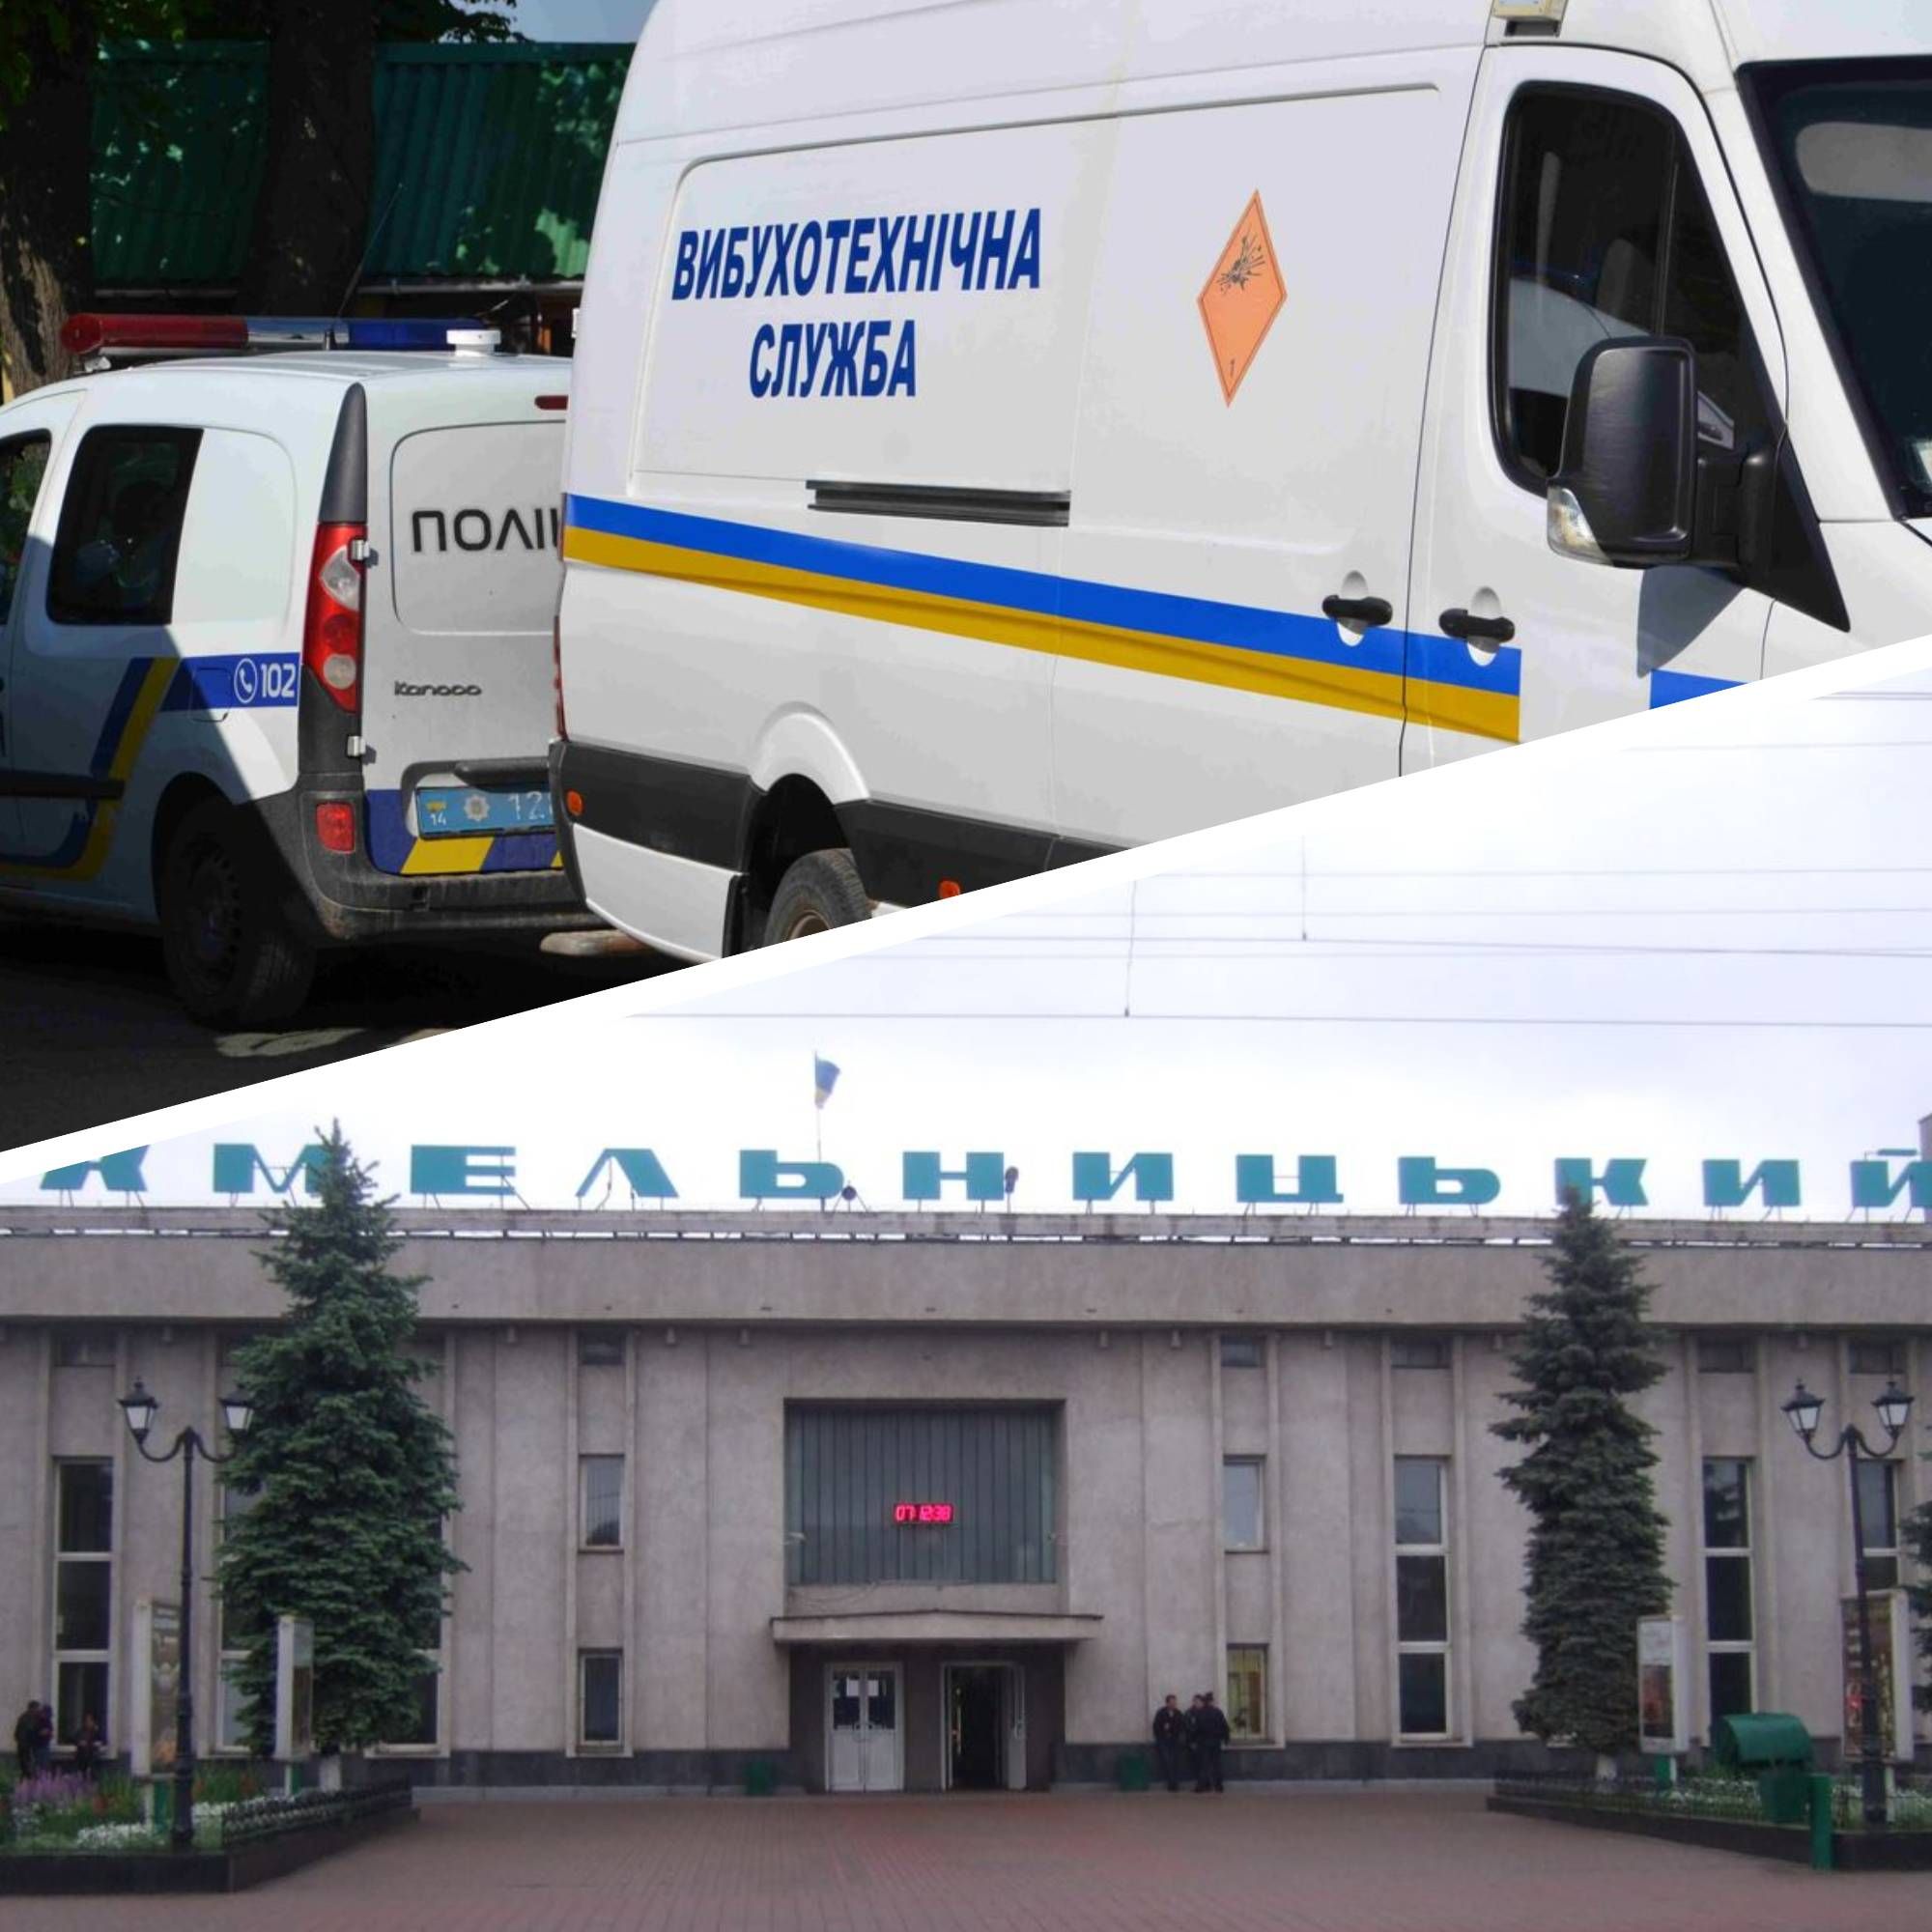 Минирование в Украине - в каких городах сообщили о заминировании